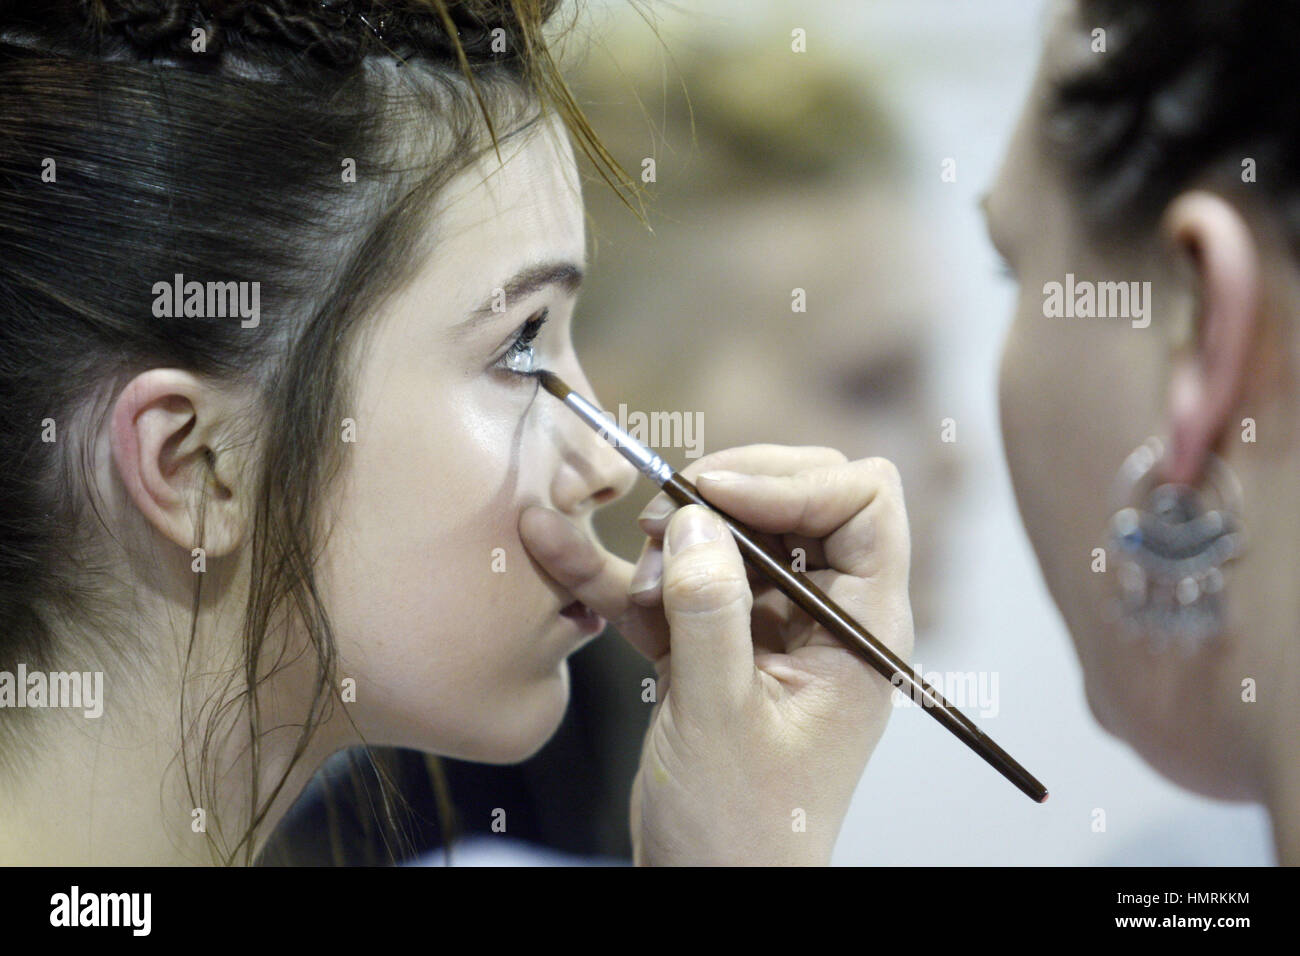 Kiev, Ukraine. 4th Feb, 2017. A model gets her makeup done backstage ...